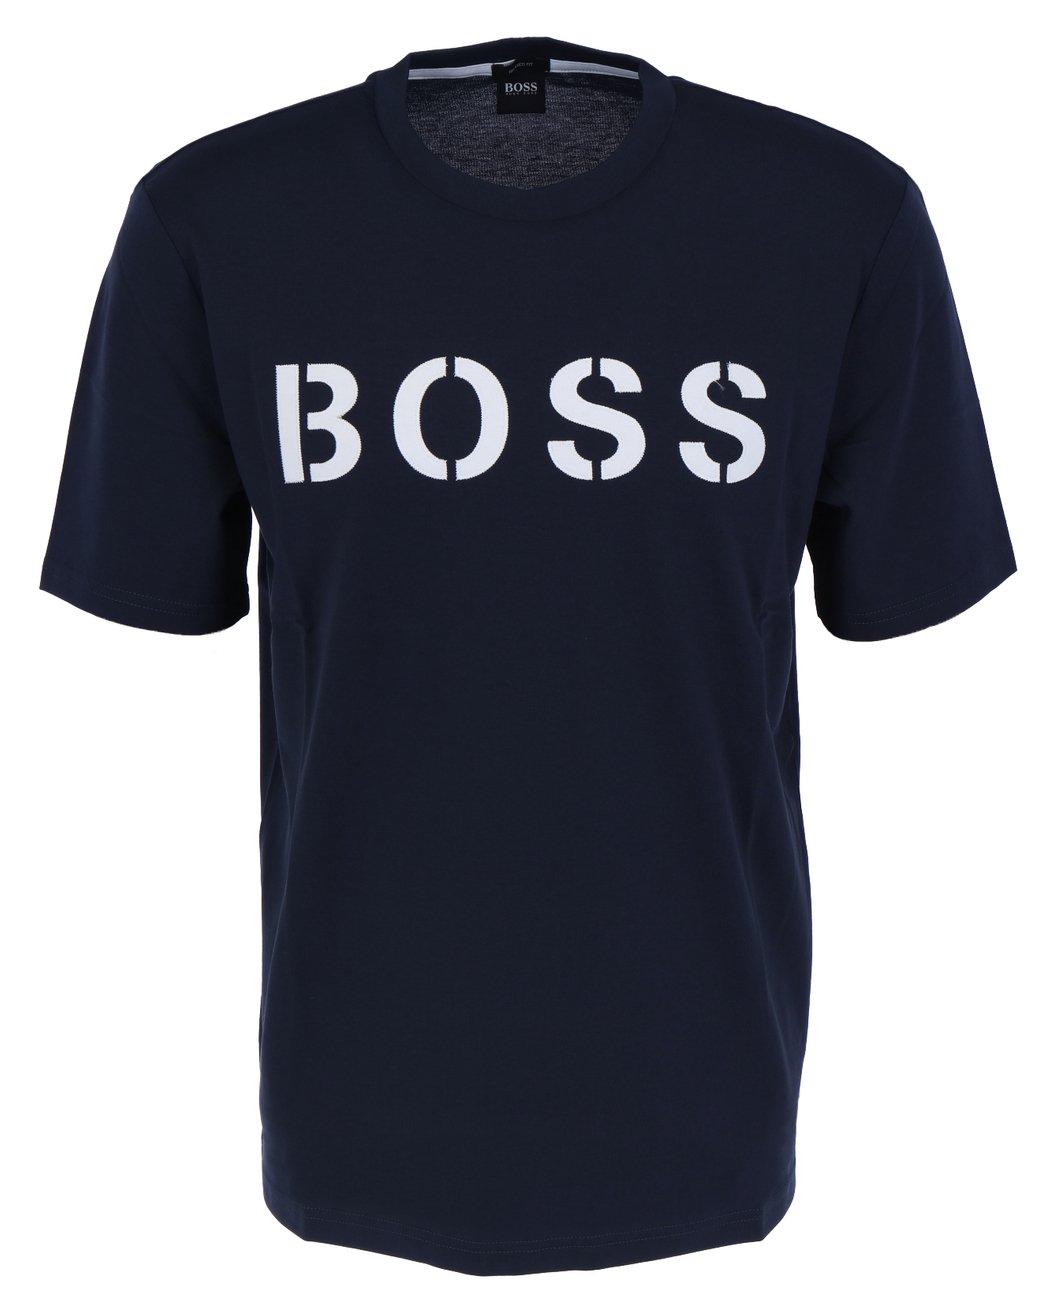 HUGO BOSS TETRY Herren T-Shirt Relaxed Fit - Hugo Boss - SAGATOO - 4021406440111